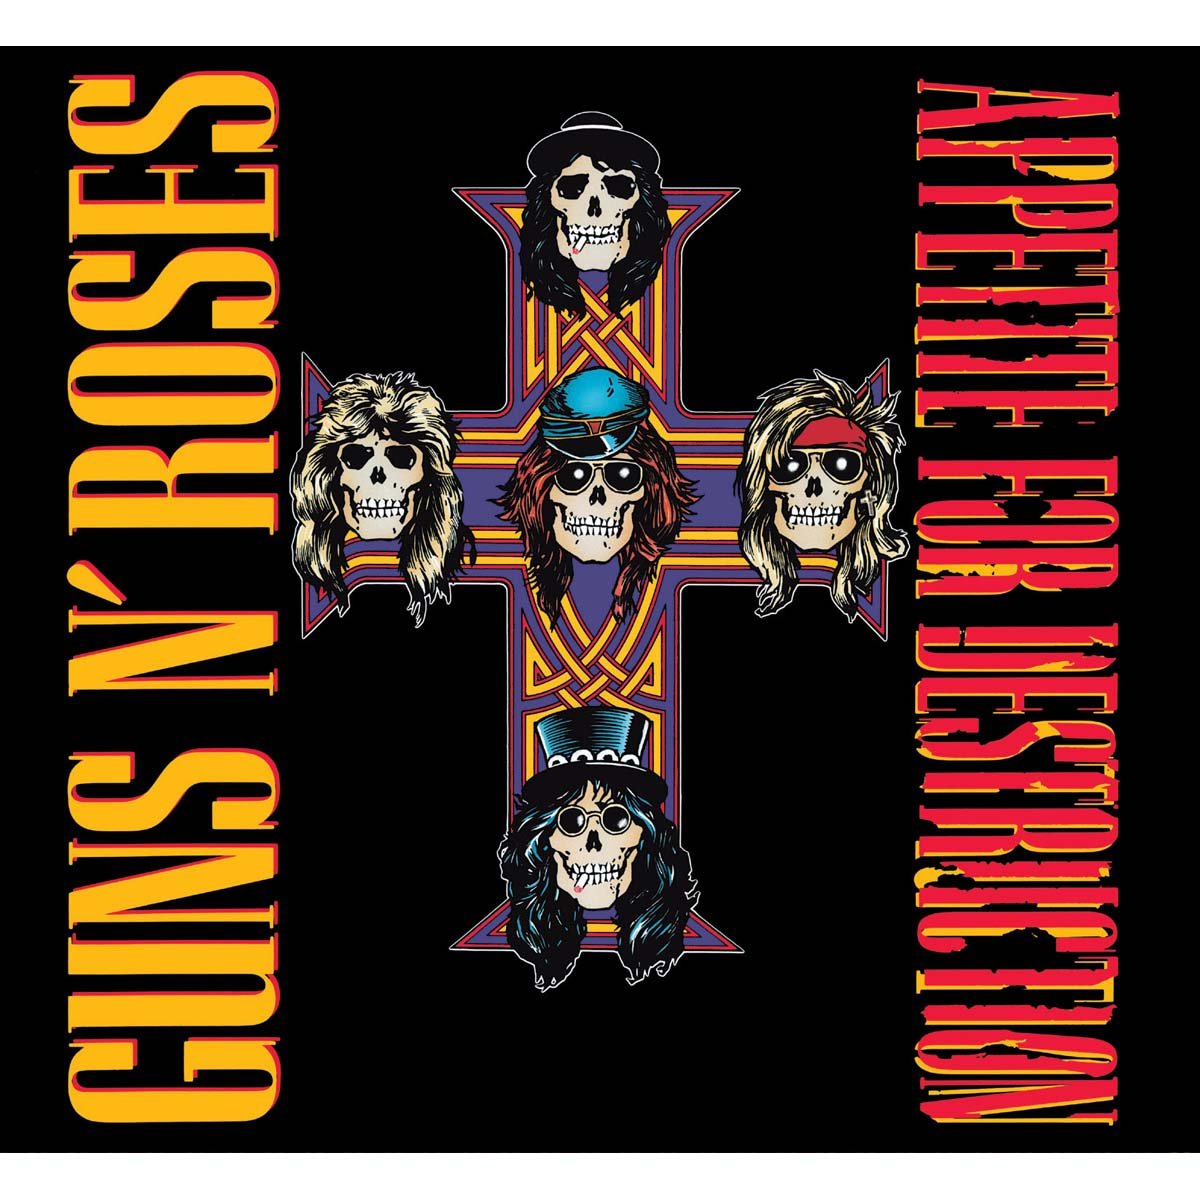 2 Cds Guns N' Roses Appetite For Destruction Deluxe